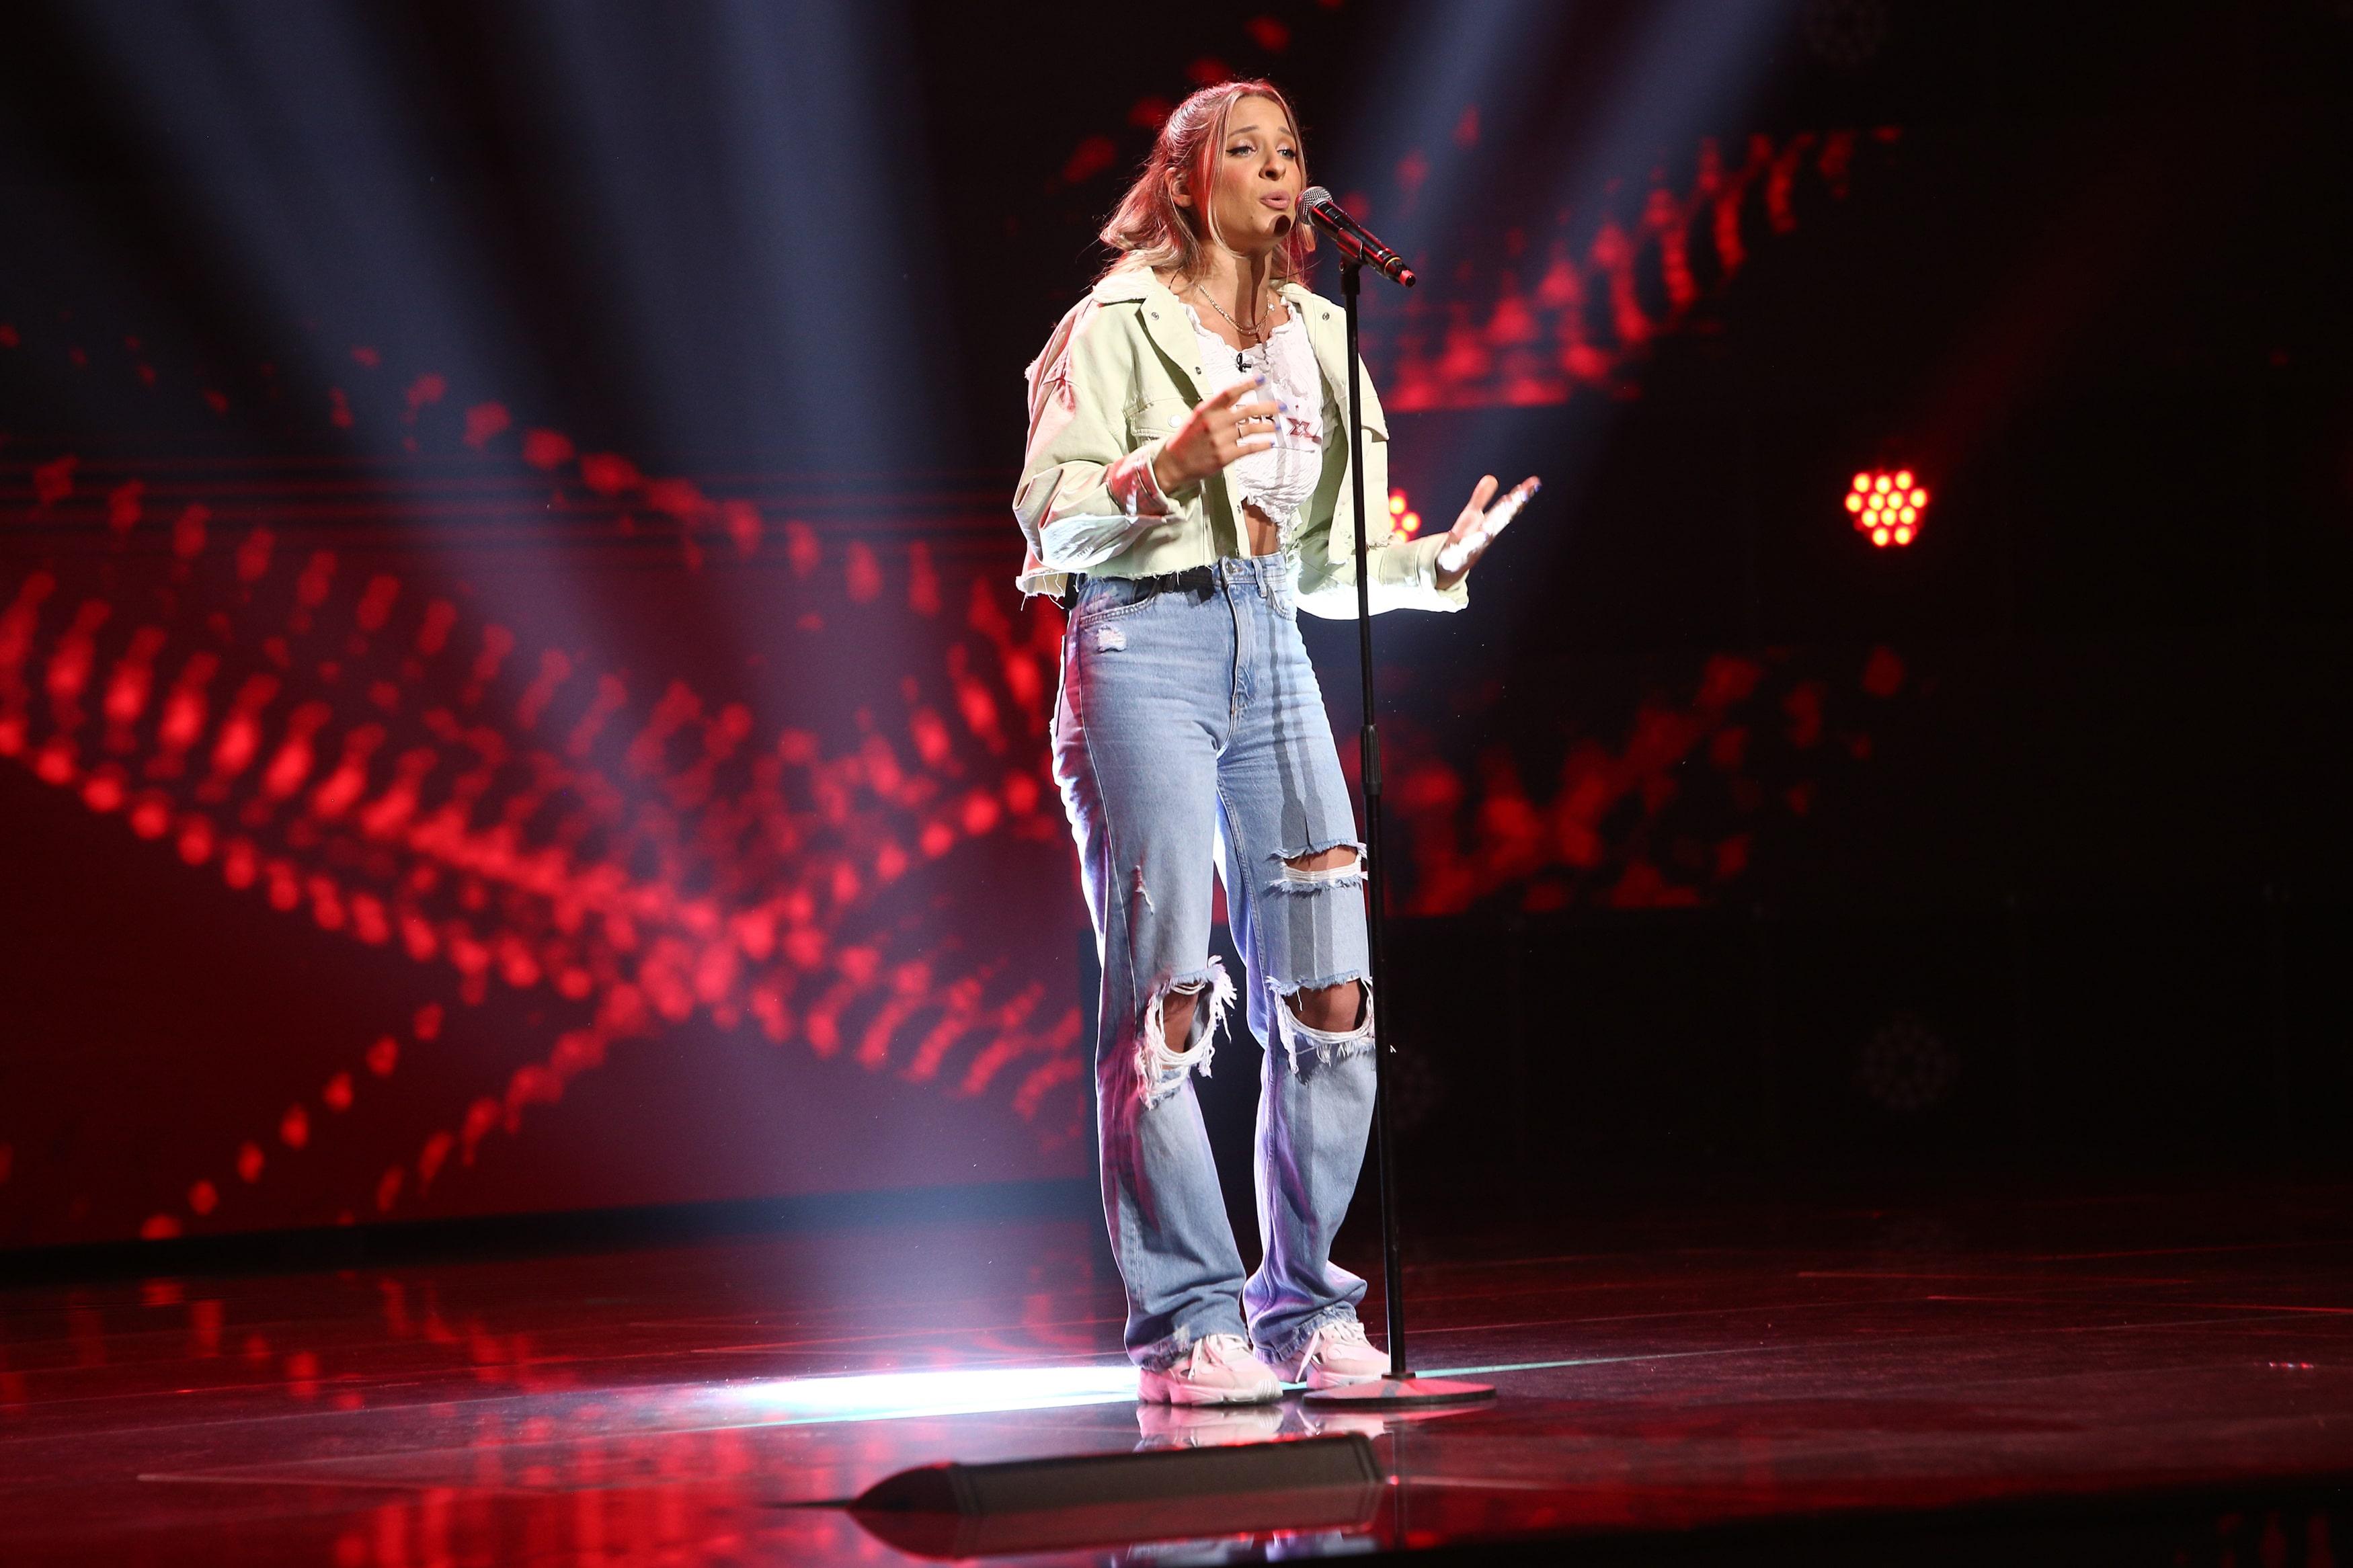 Raluca Oaida a cântat Figures la X Factor în sezonul 10